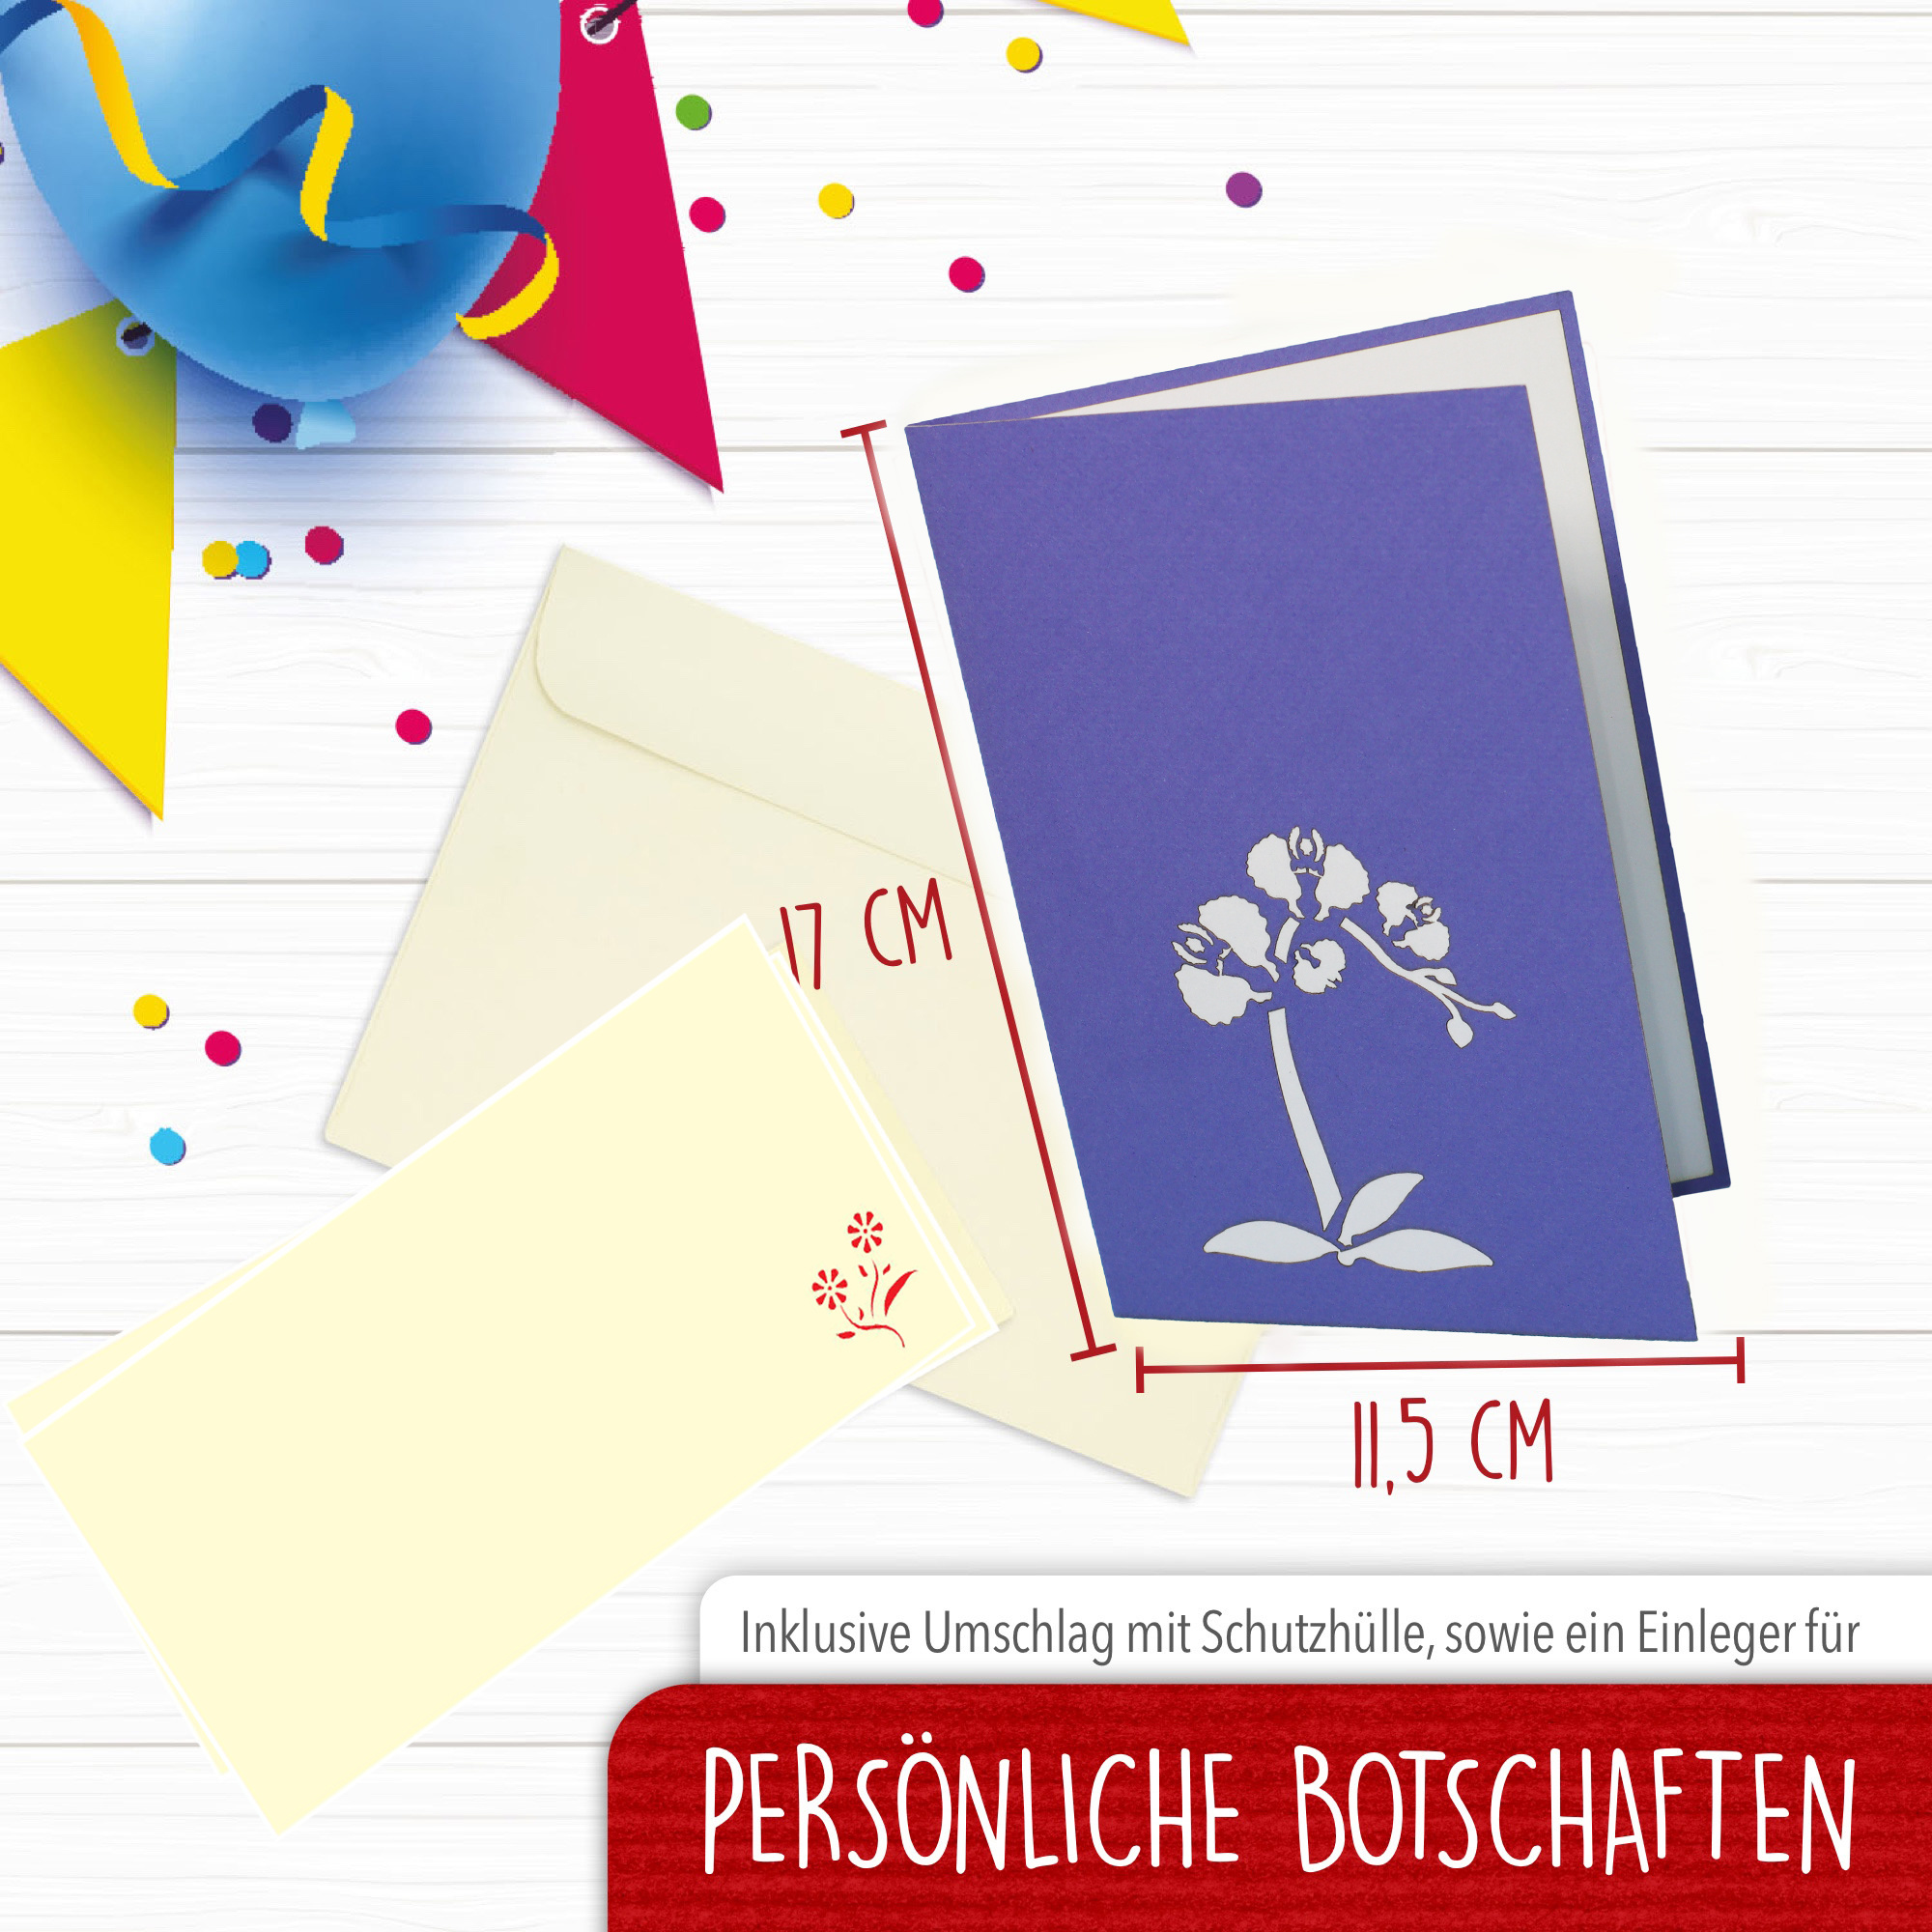 LINPOPUP Pop Up Card Flower, POP UP Card Birthday, 3D Greetingcard Flowers, Card, Foldingcard, Birthdaycard, Good Luck, get well soon, Wellness coupon, violet orchid, LIN 17638, LINPopUp®, N359